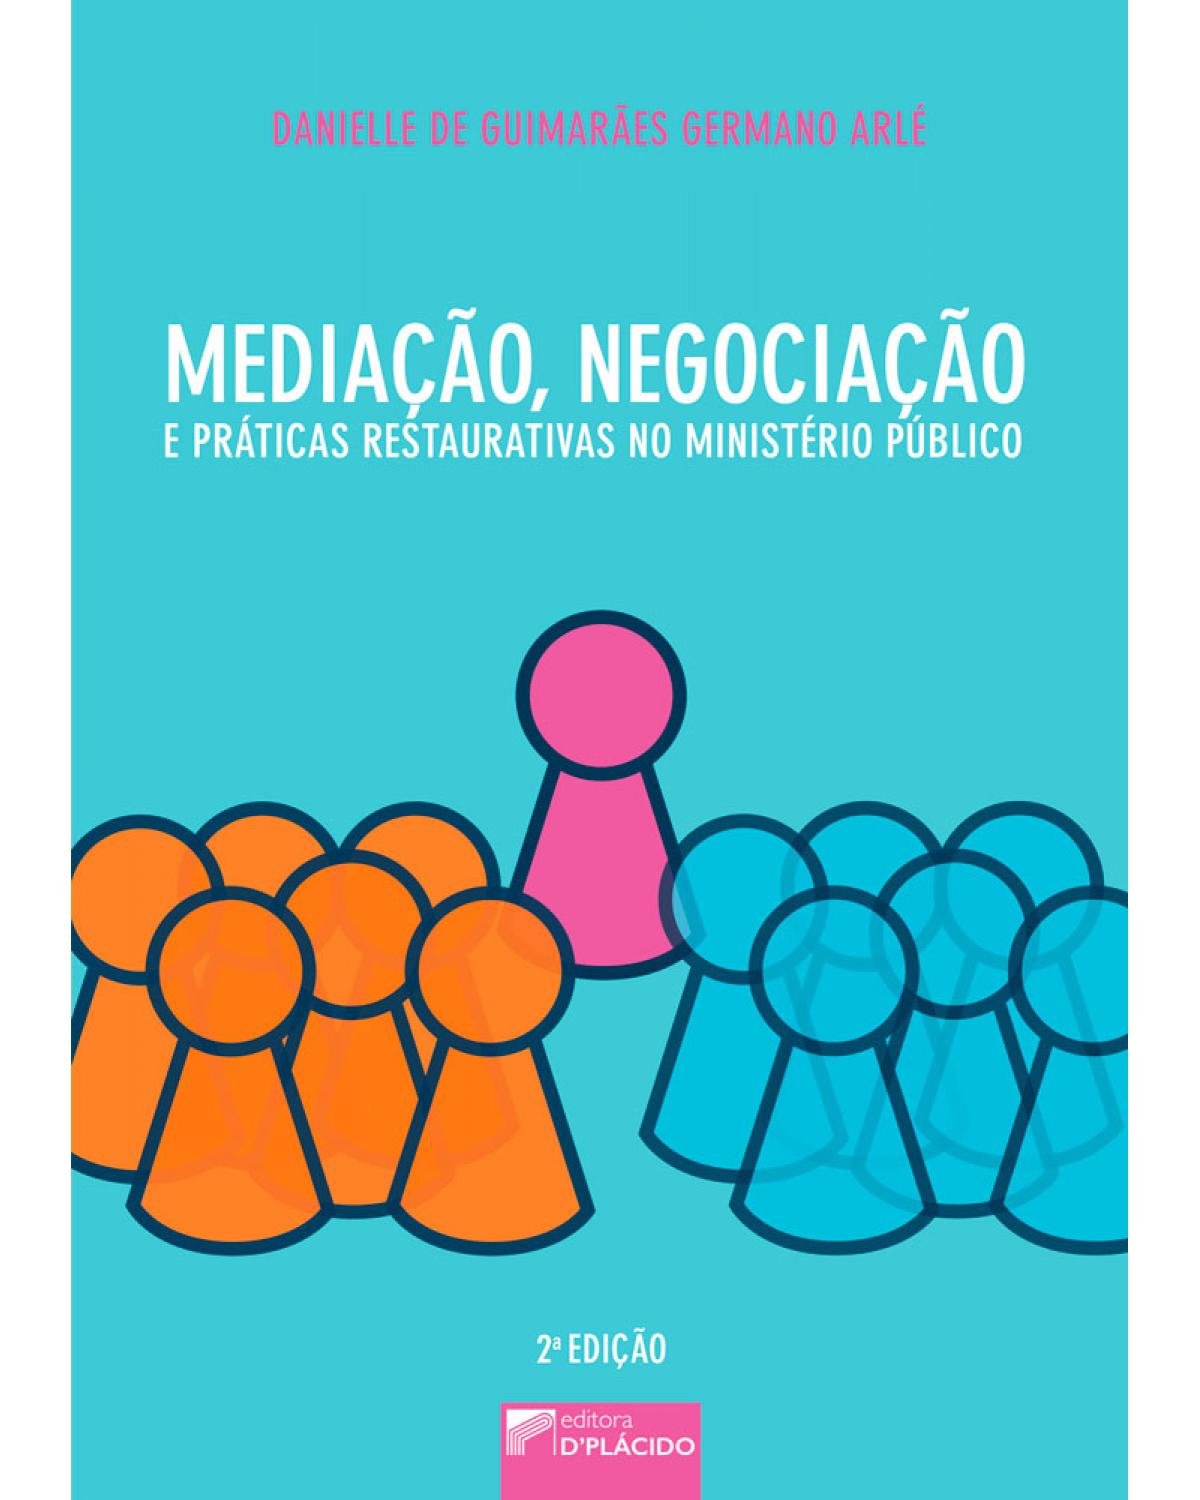 Mediação, negociação e práticas restaurativas no Ministério Público - 2ª Edição | 2017